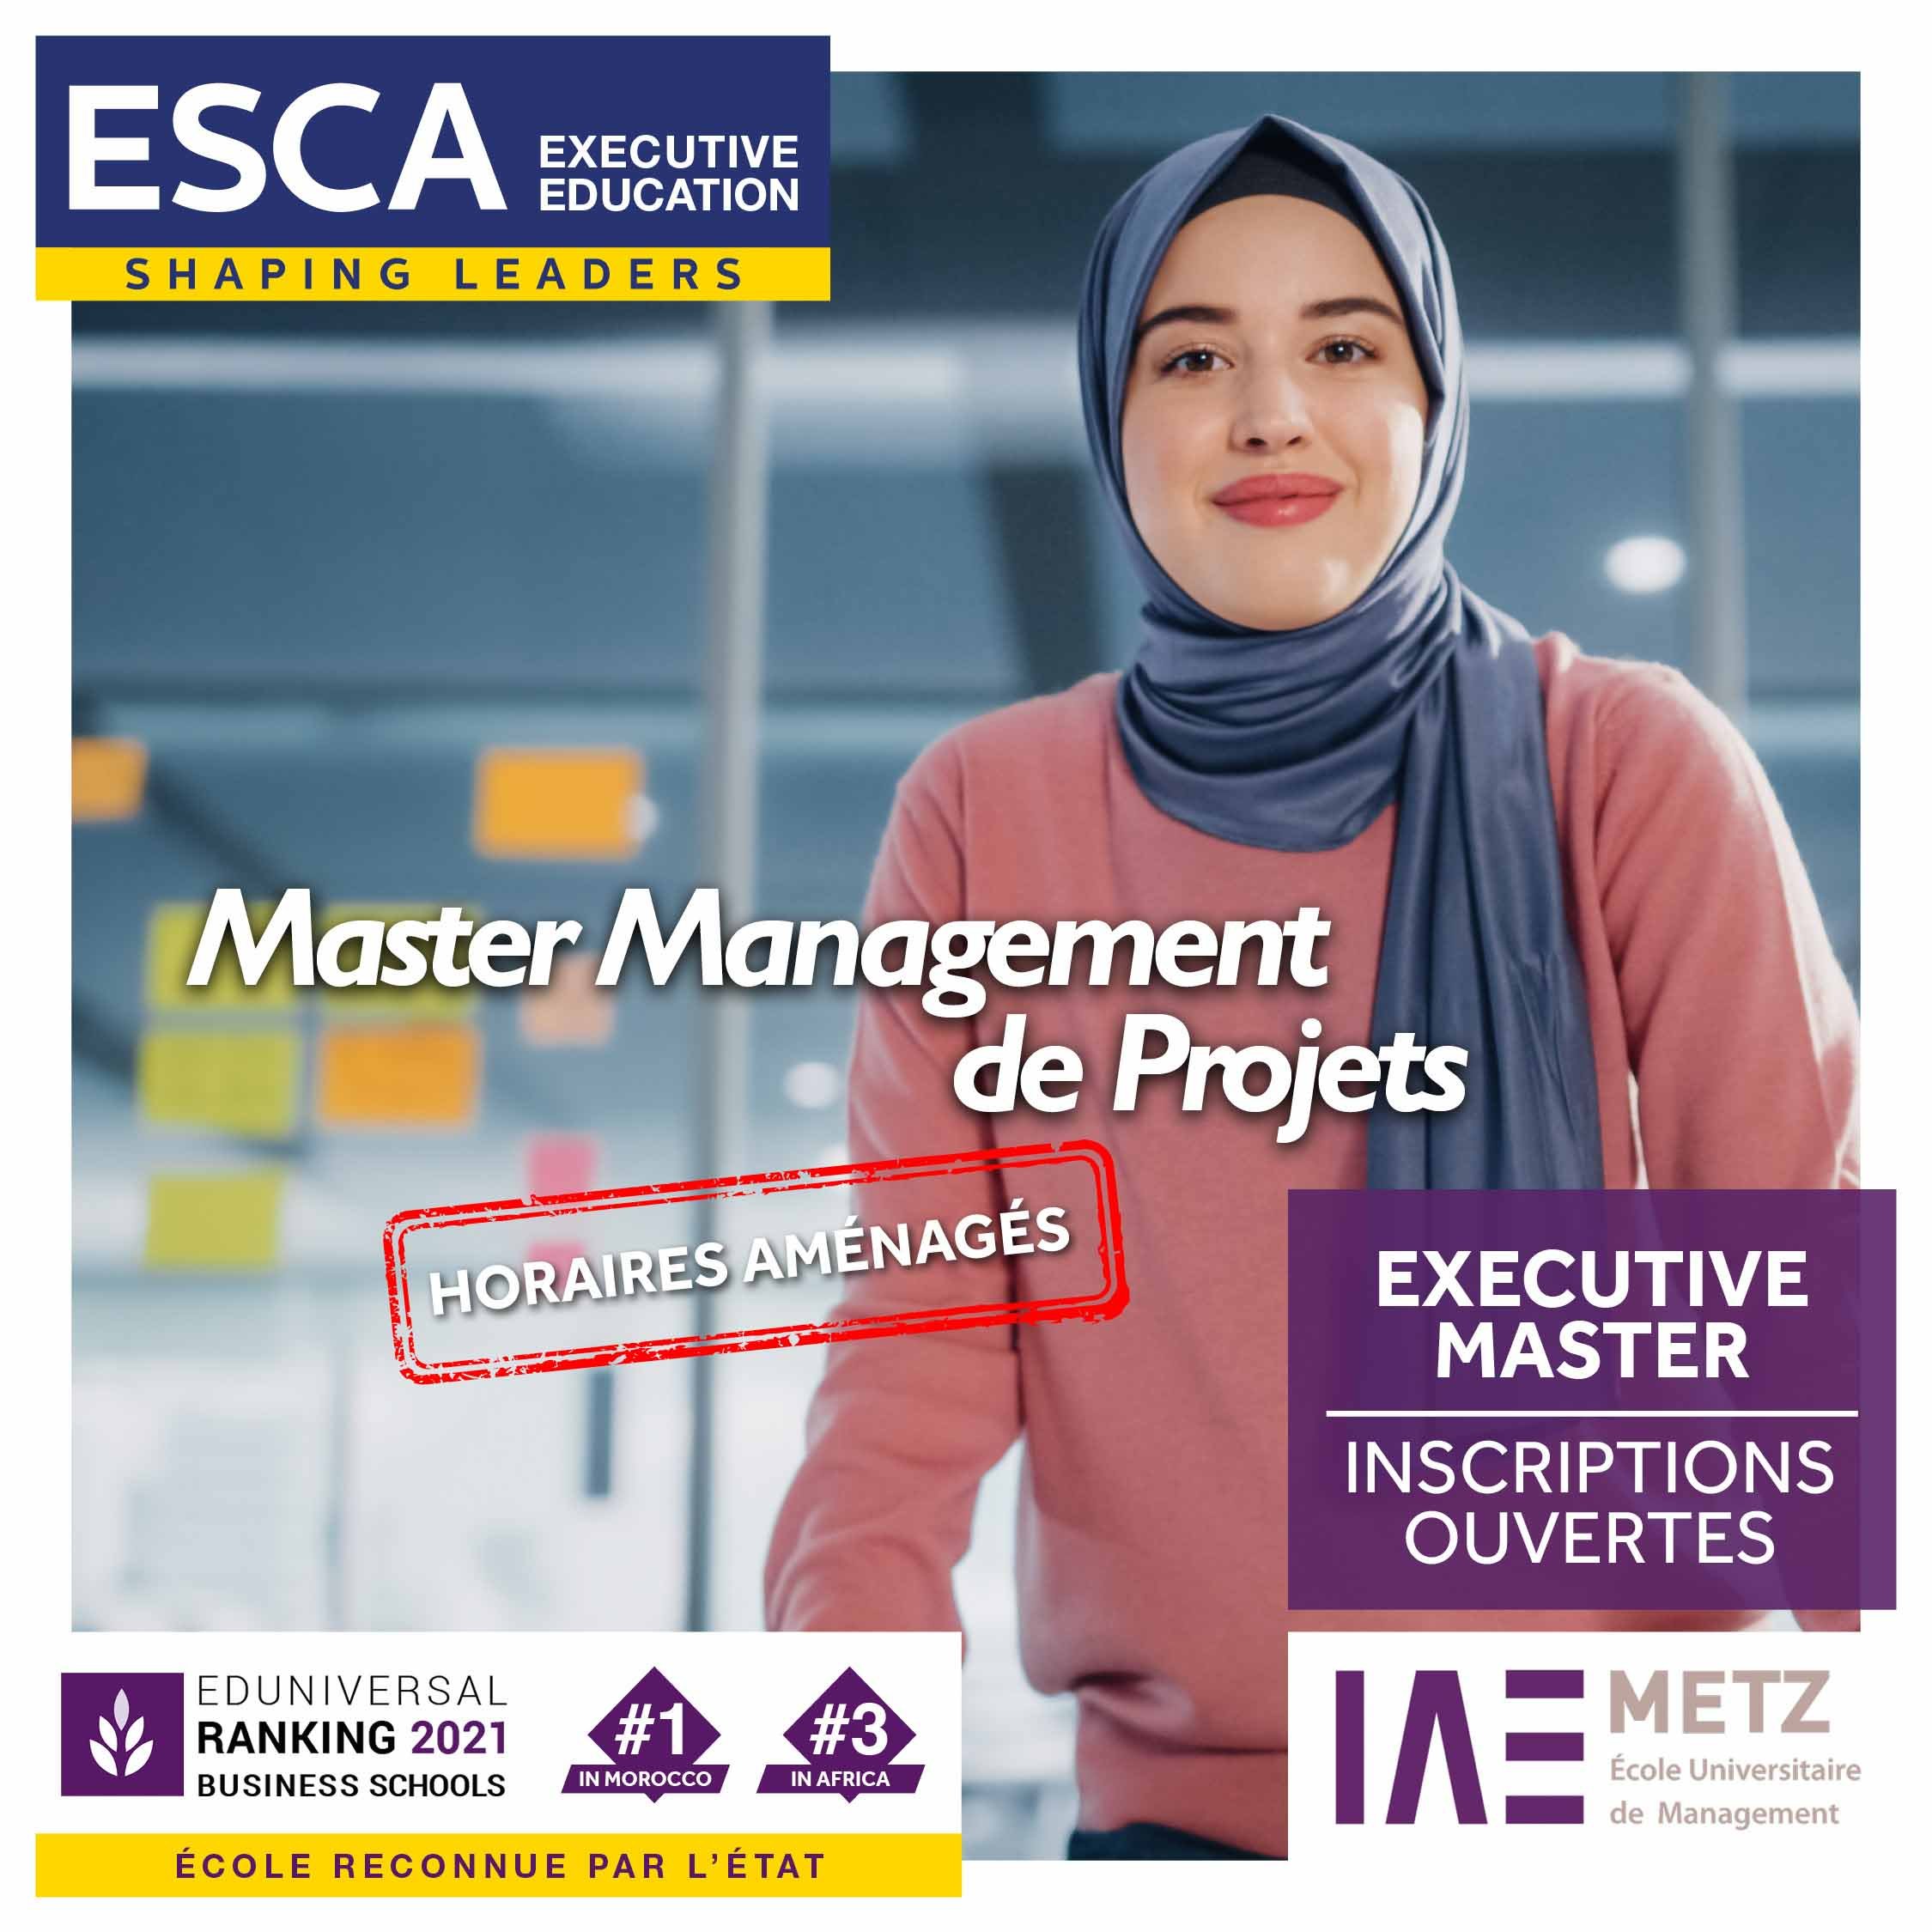 esca executive master management de projet